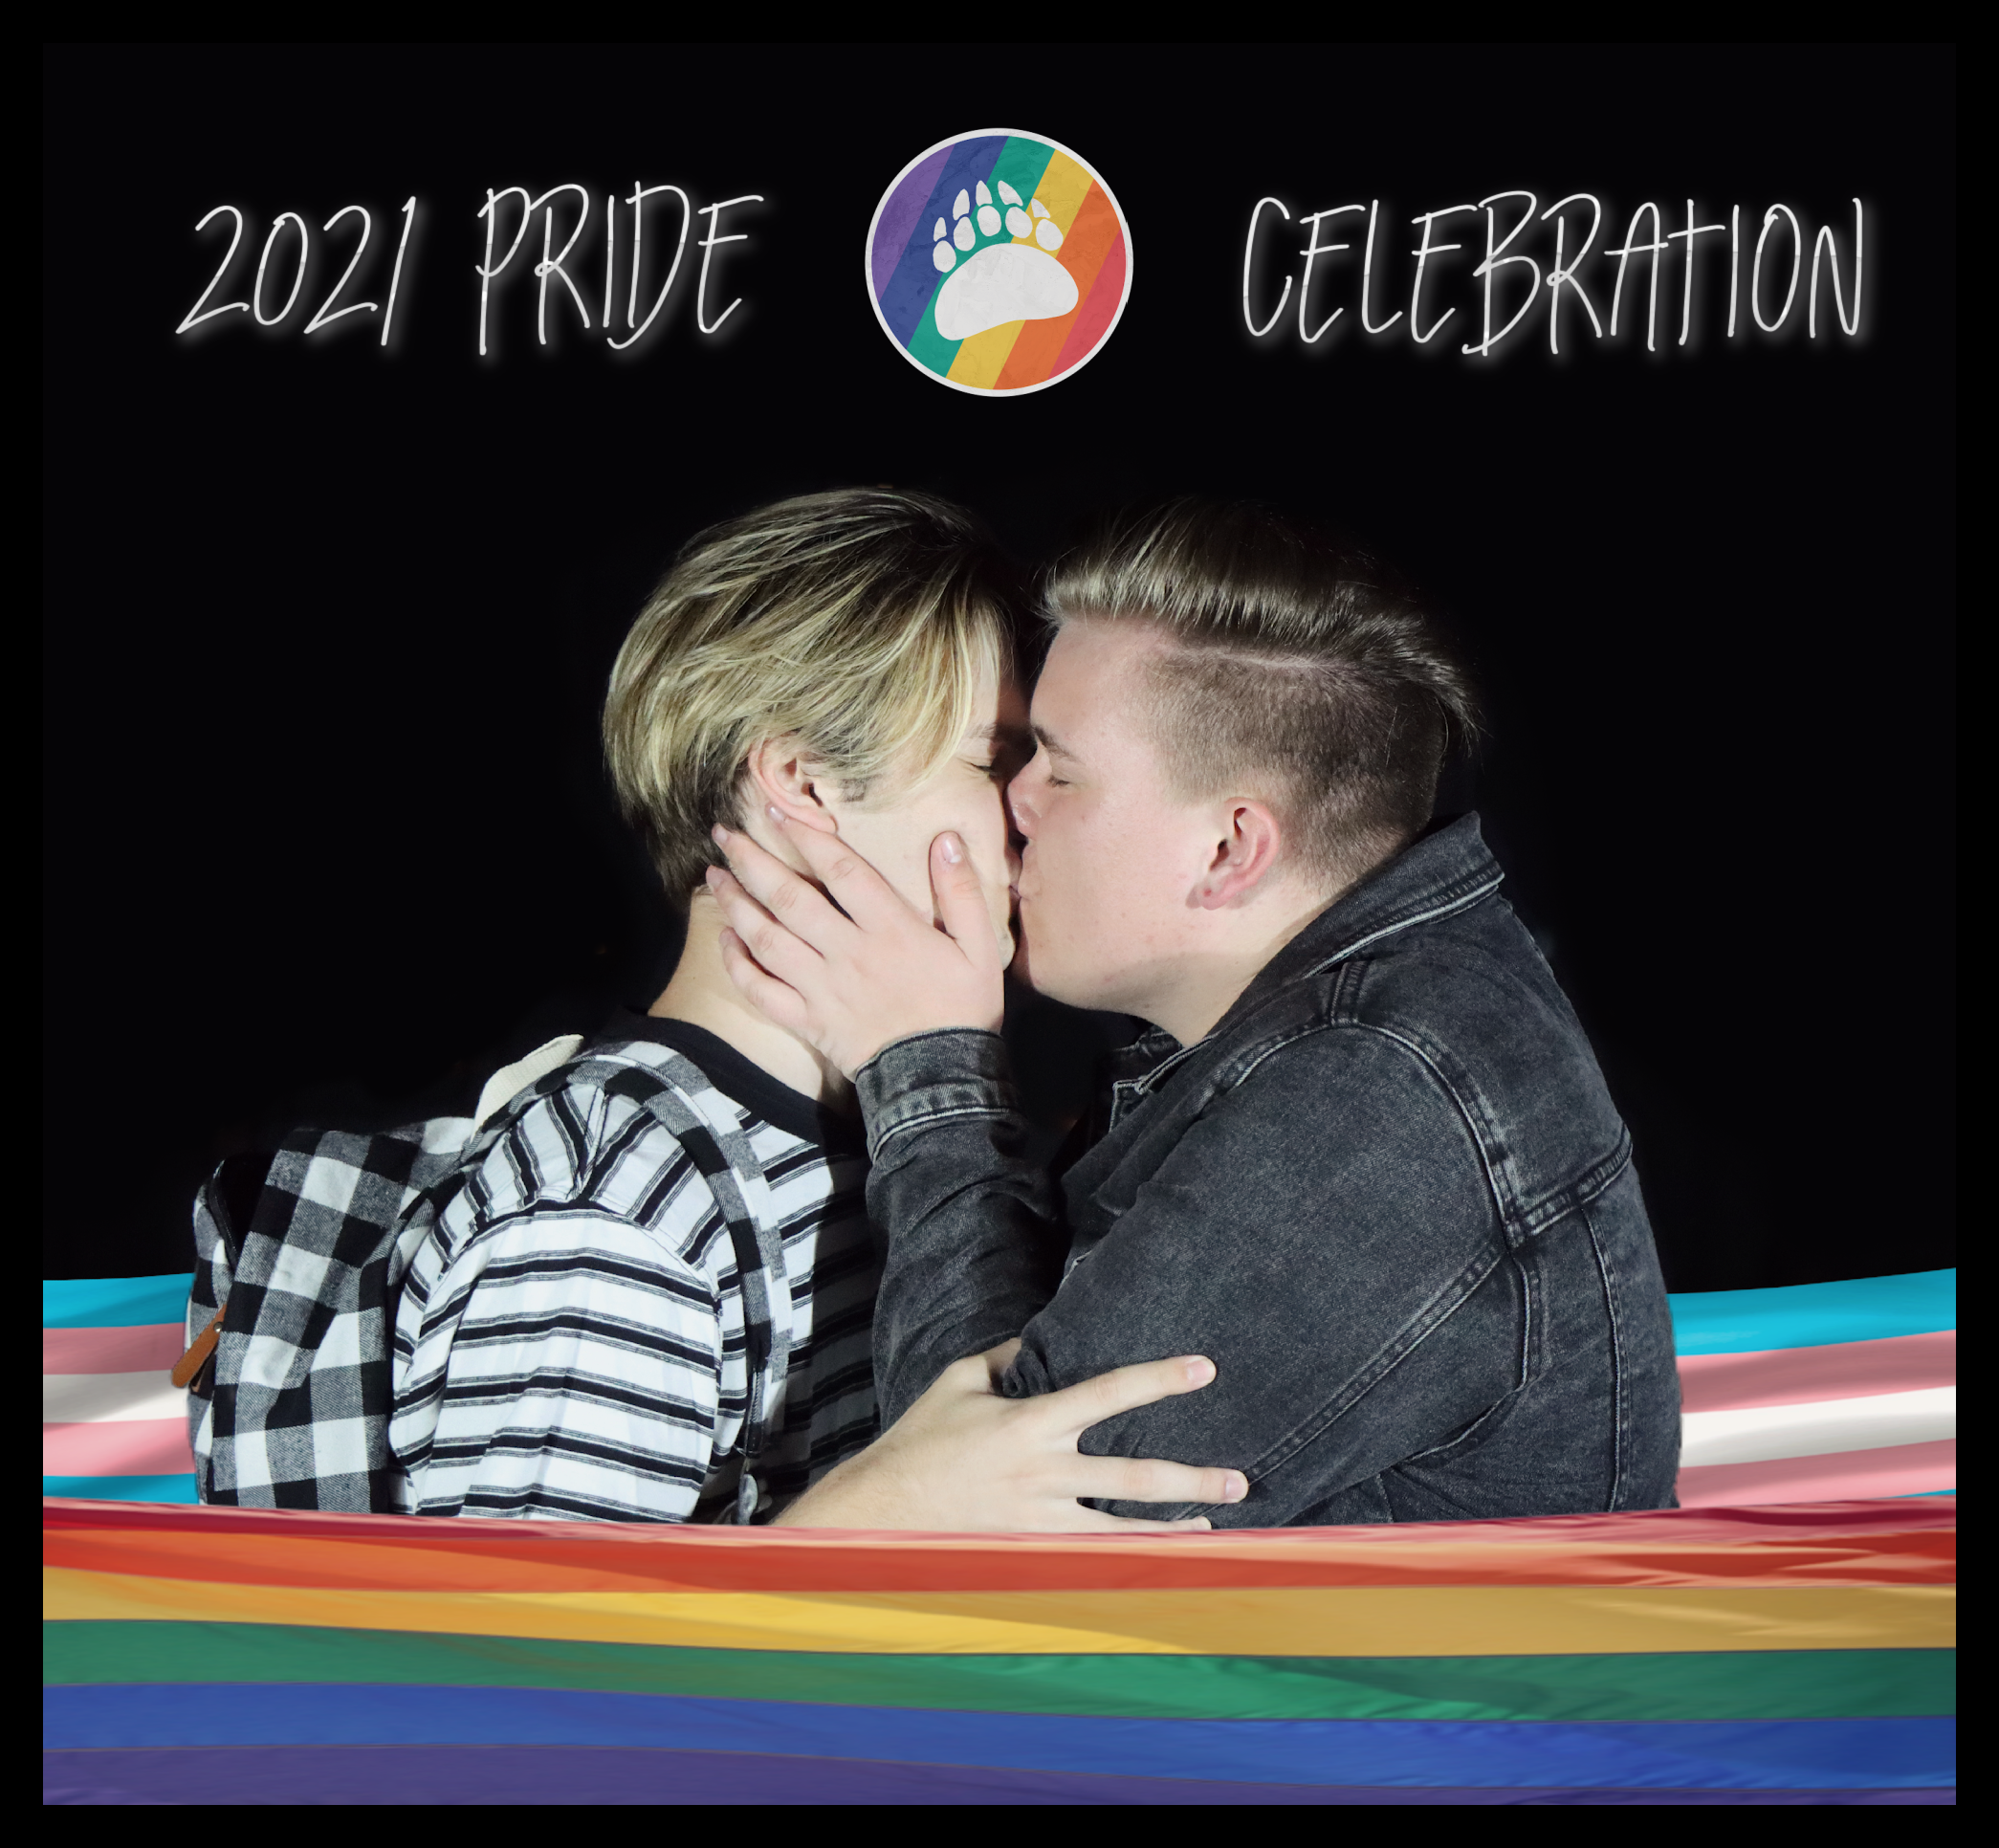 2021 pride celebration 